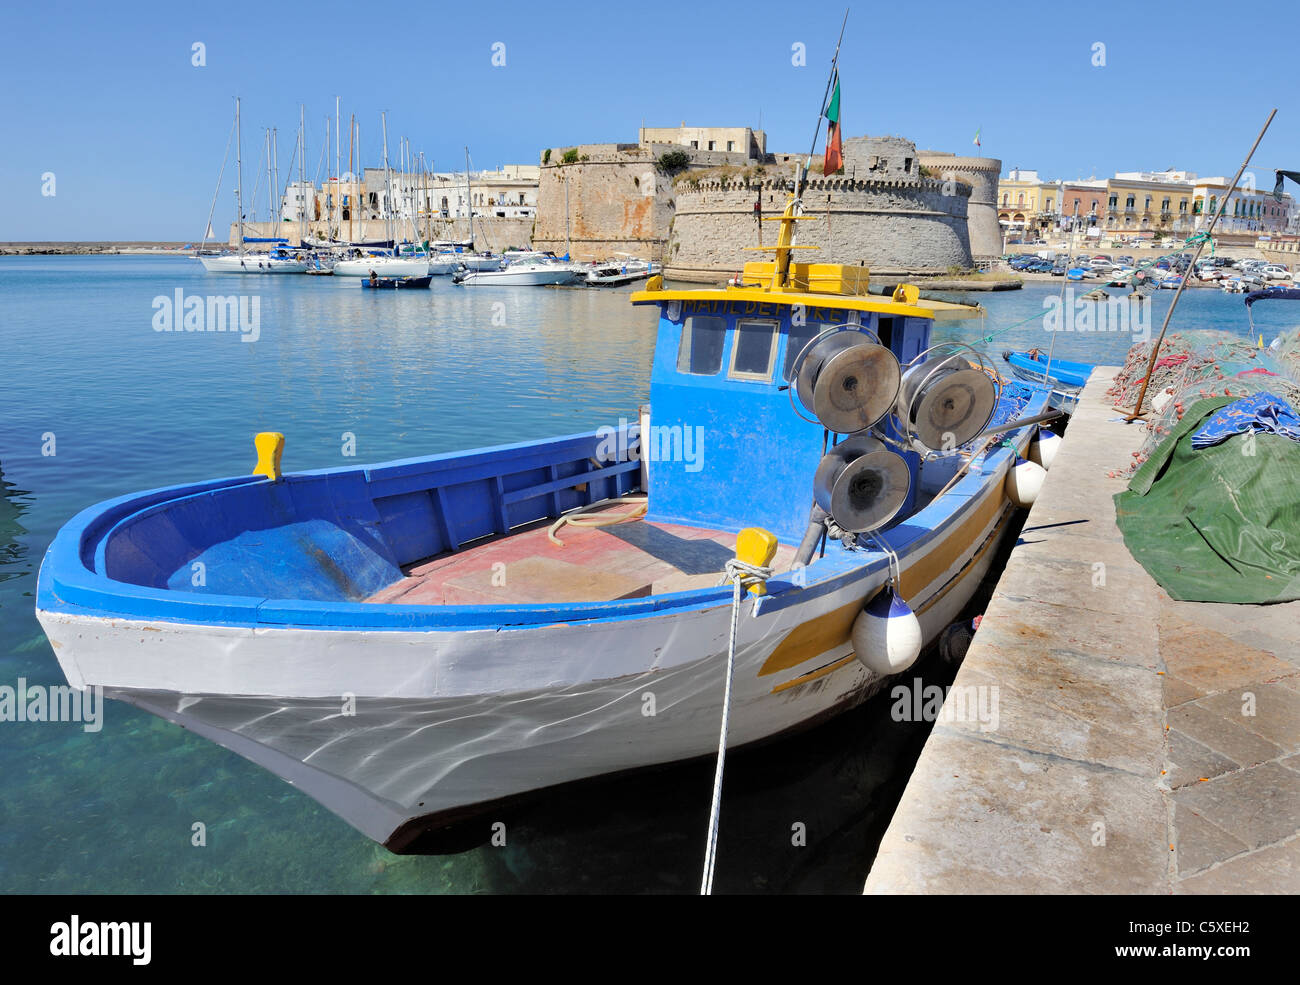 Bateau de pêche dans le port en face du vieux château à Gallipoli, Italie Banque D'Images